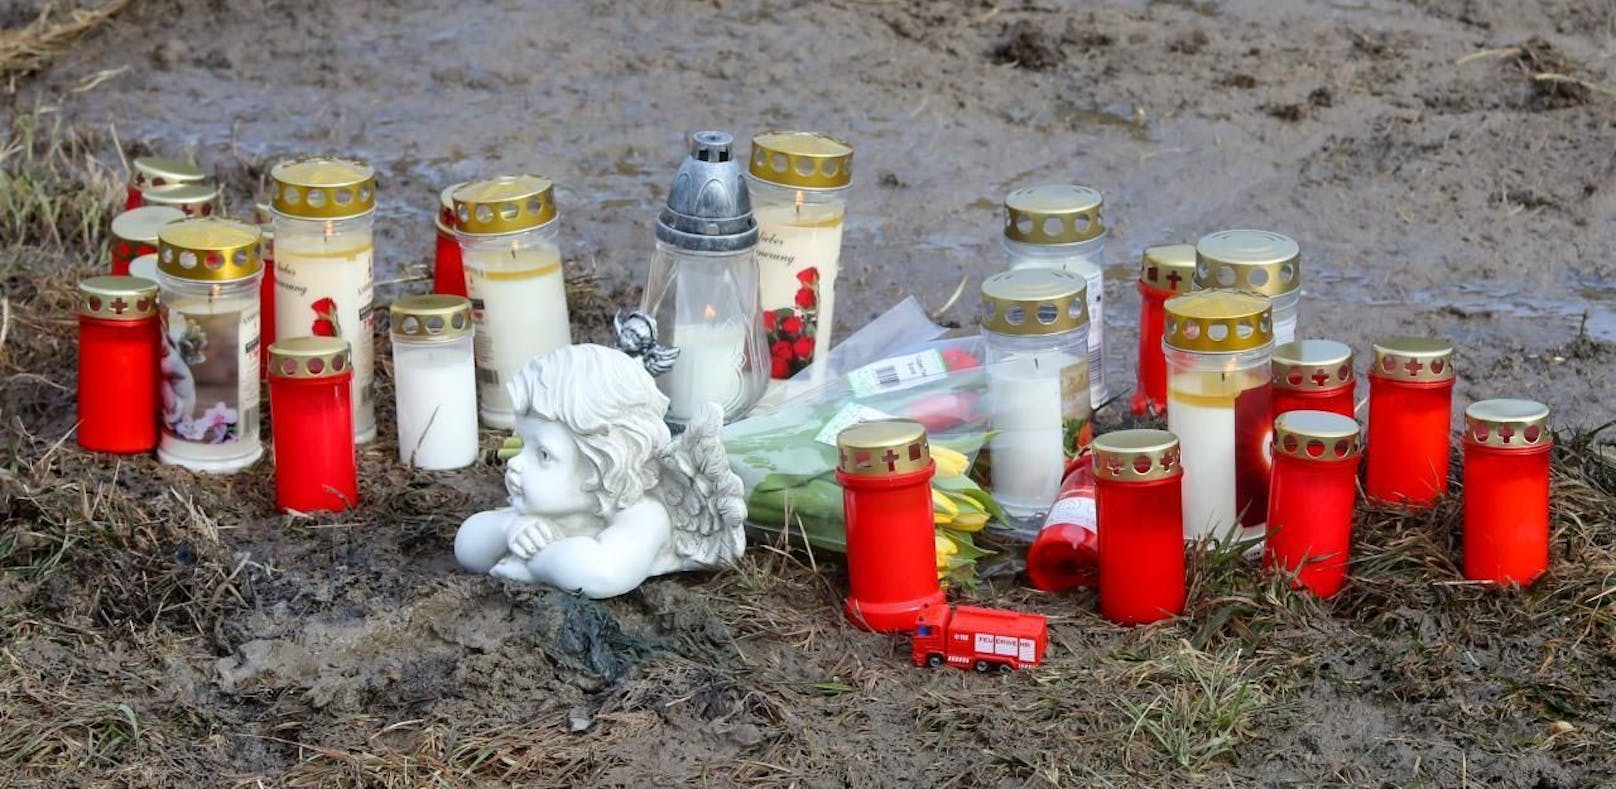 An der Unfallstelle wurde der Verstorbenen mit Kerzen und Blumen gedacht. 